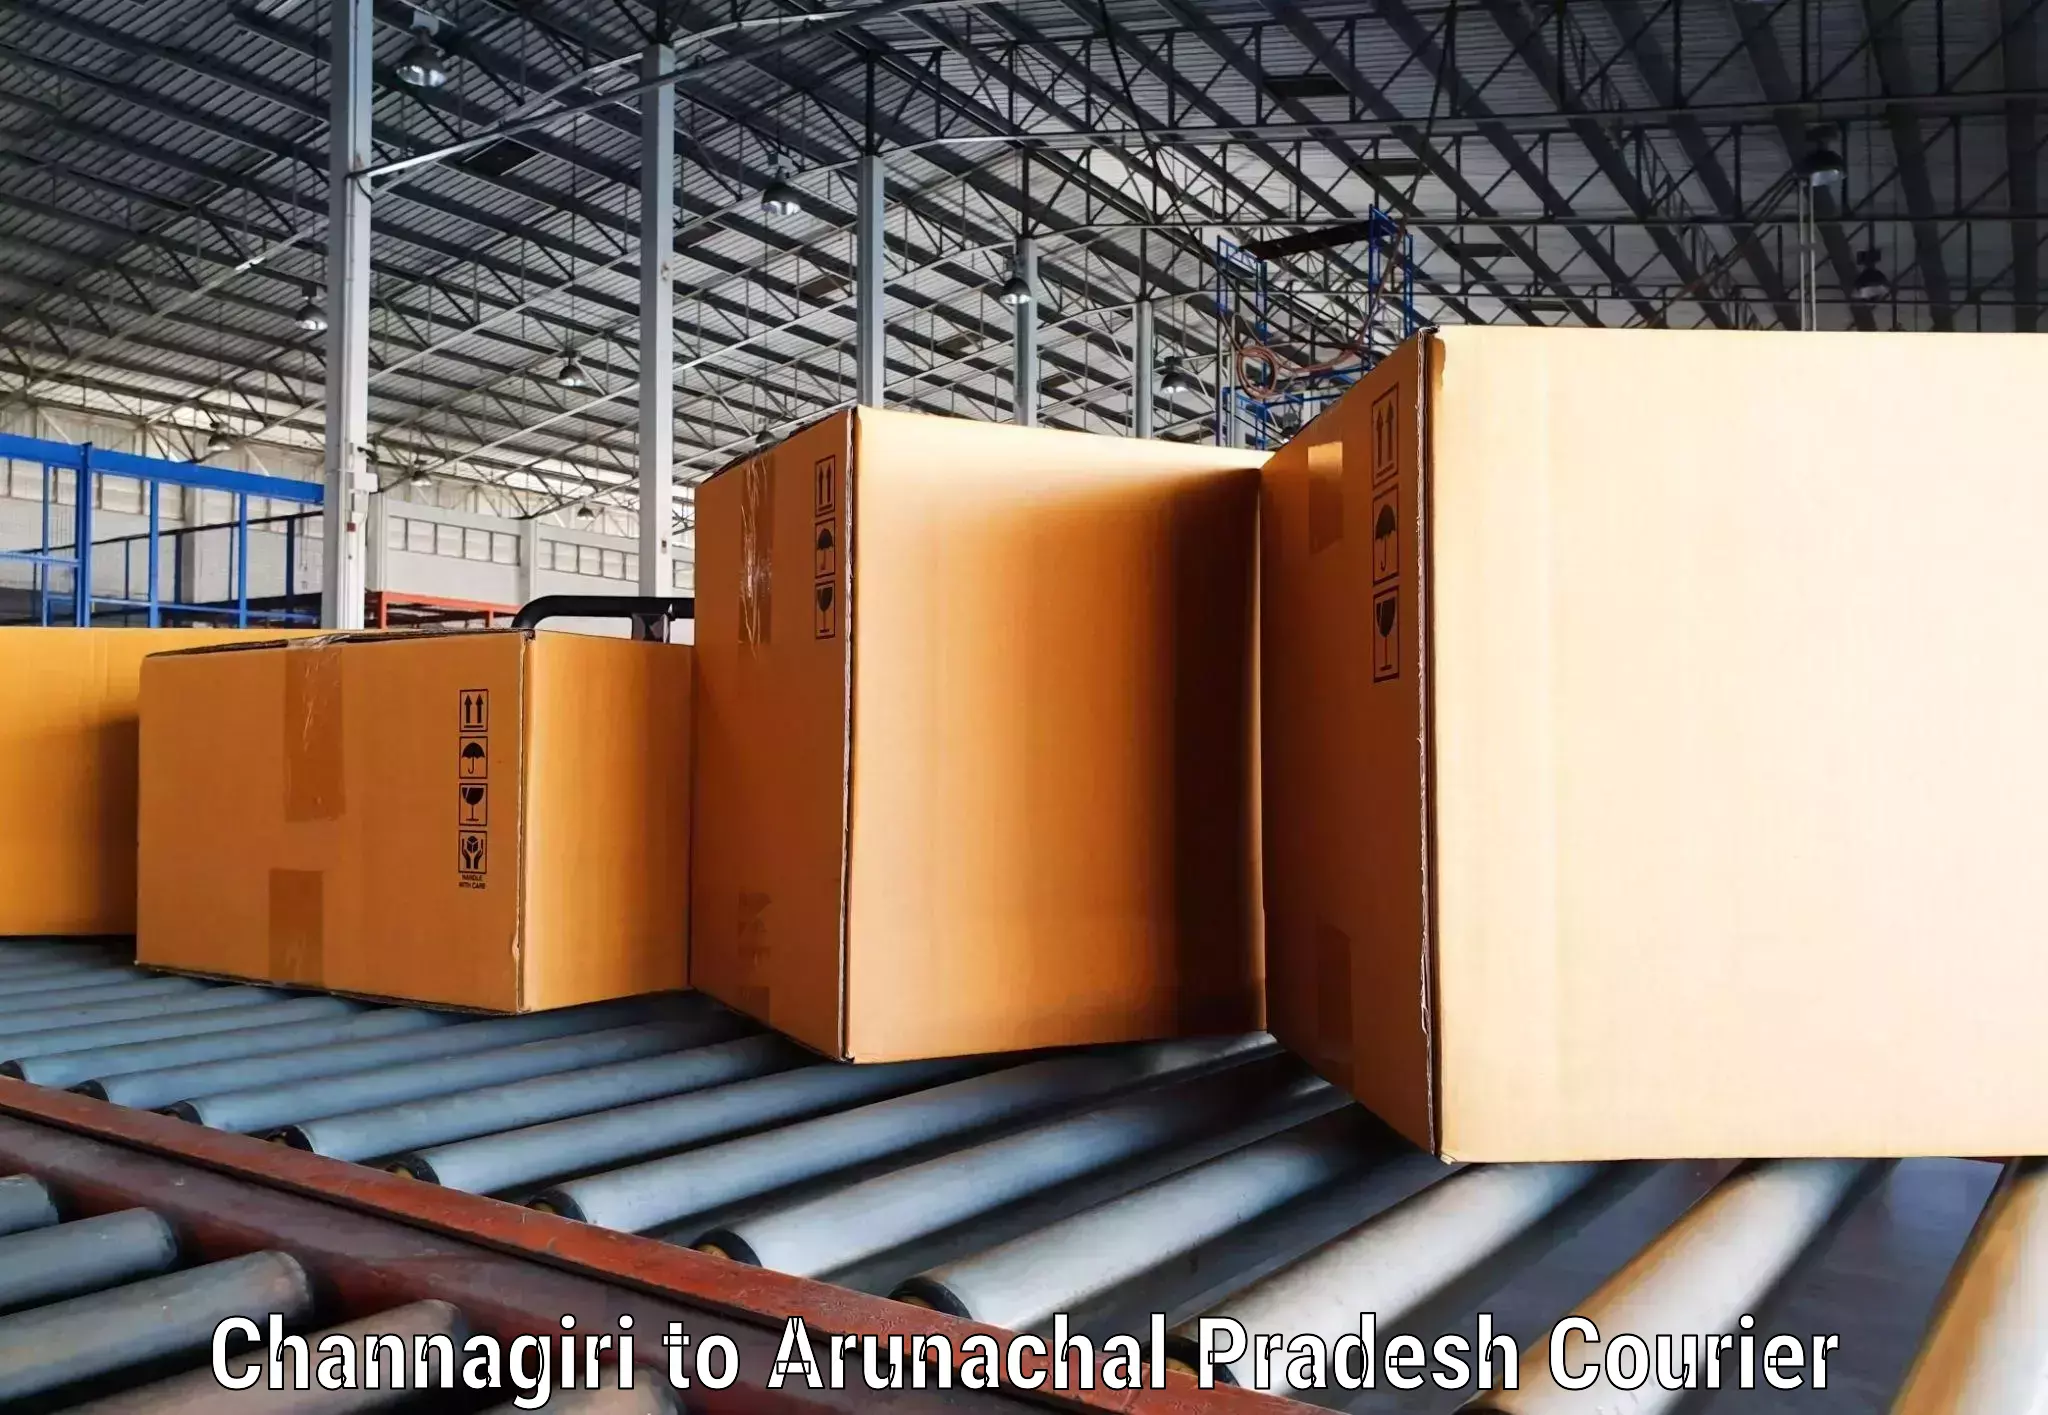 Express logistics providers Channagiri to Nirjuli